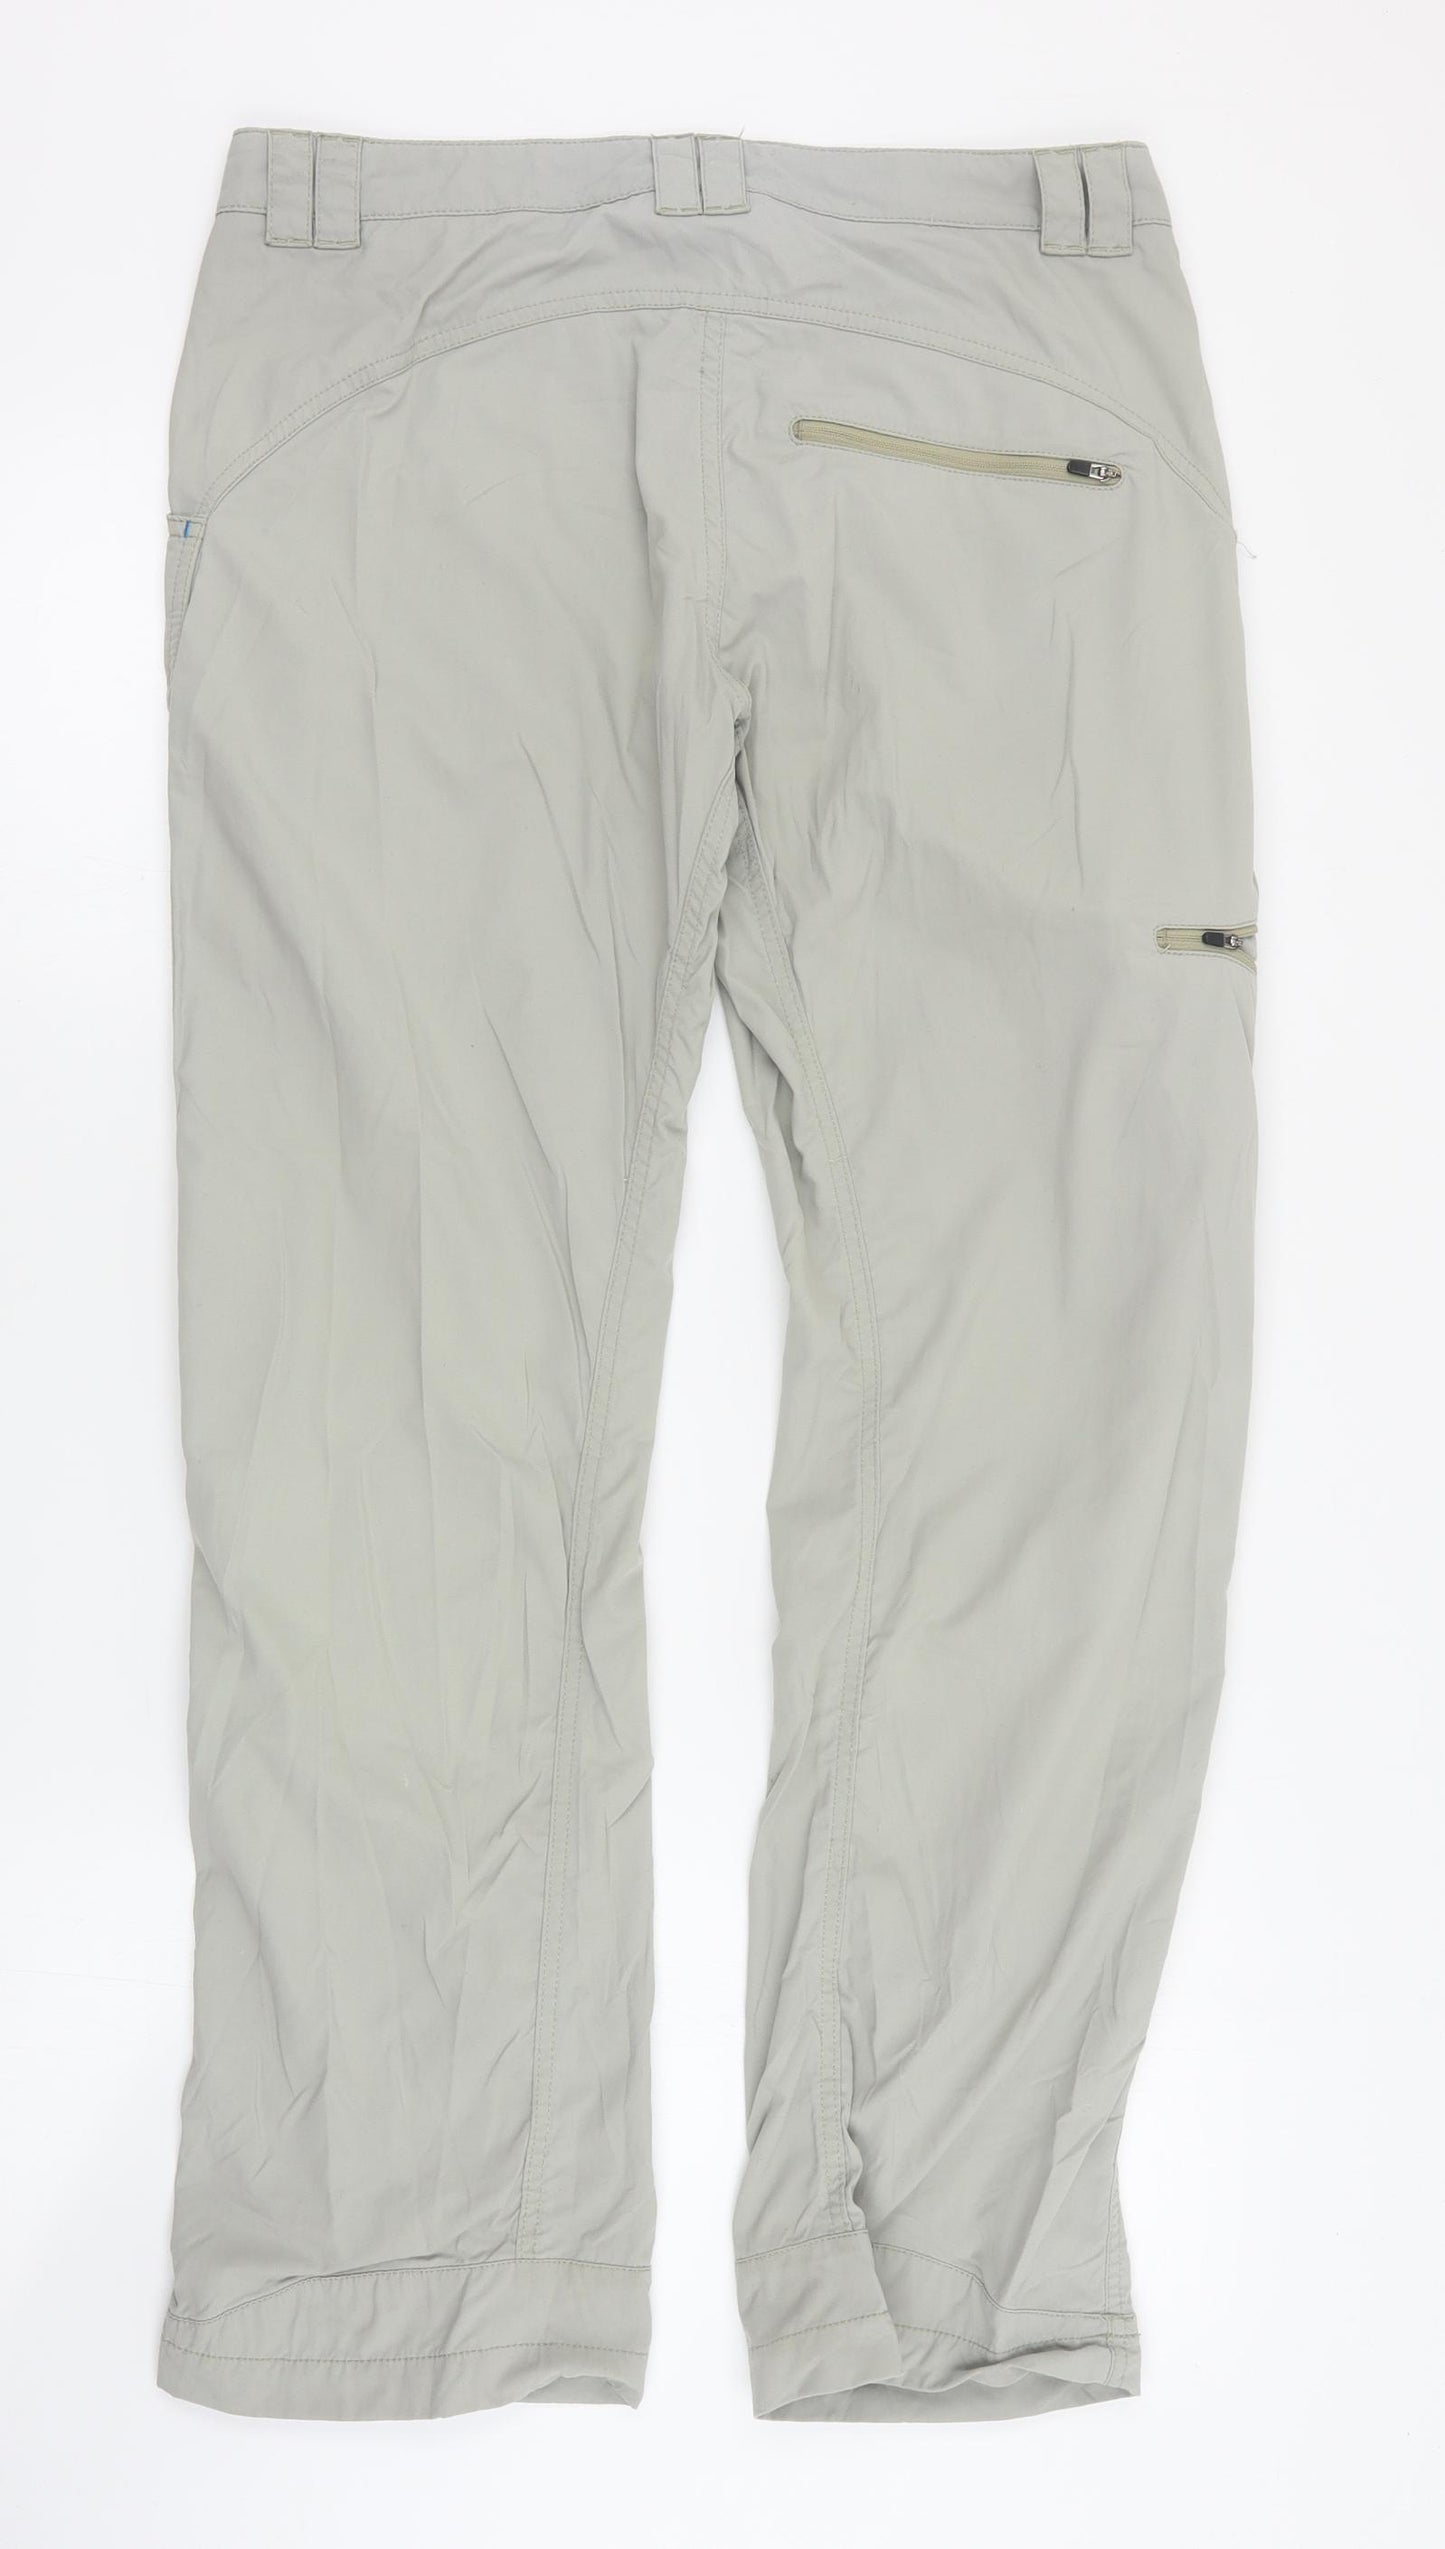 Lowe Alpine Womens Beige  Nylon Trousers  Size 10 L30 in Regular Zip